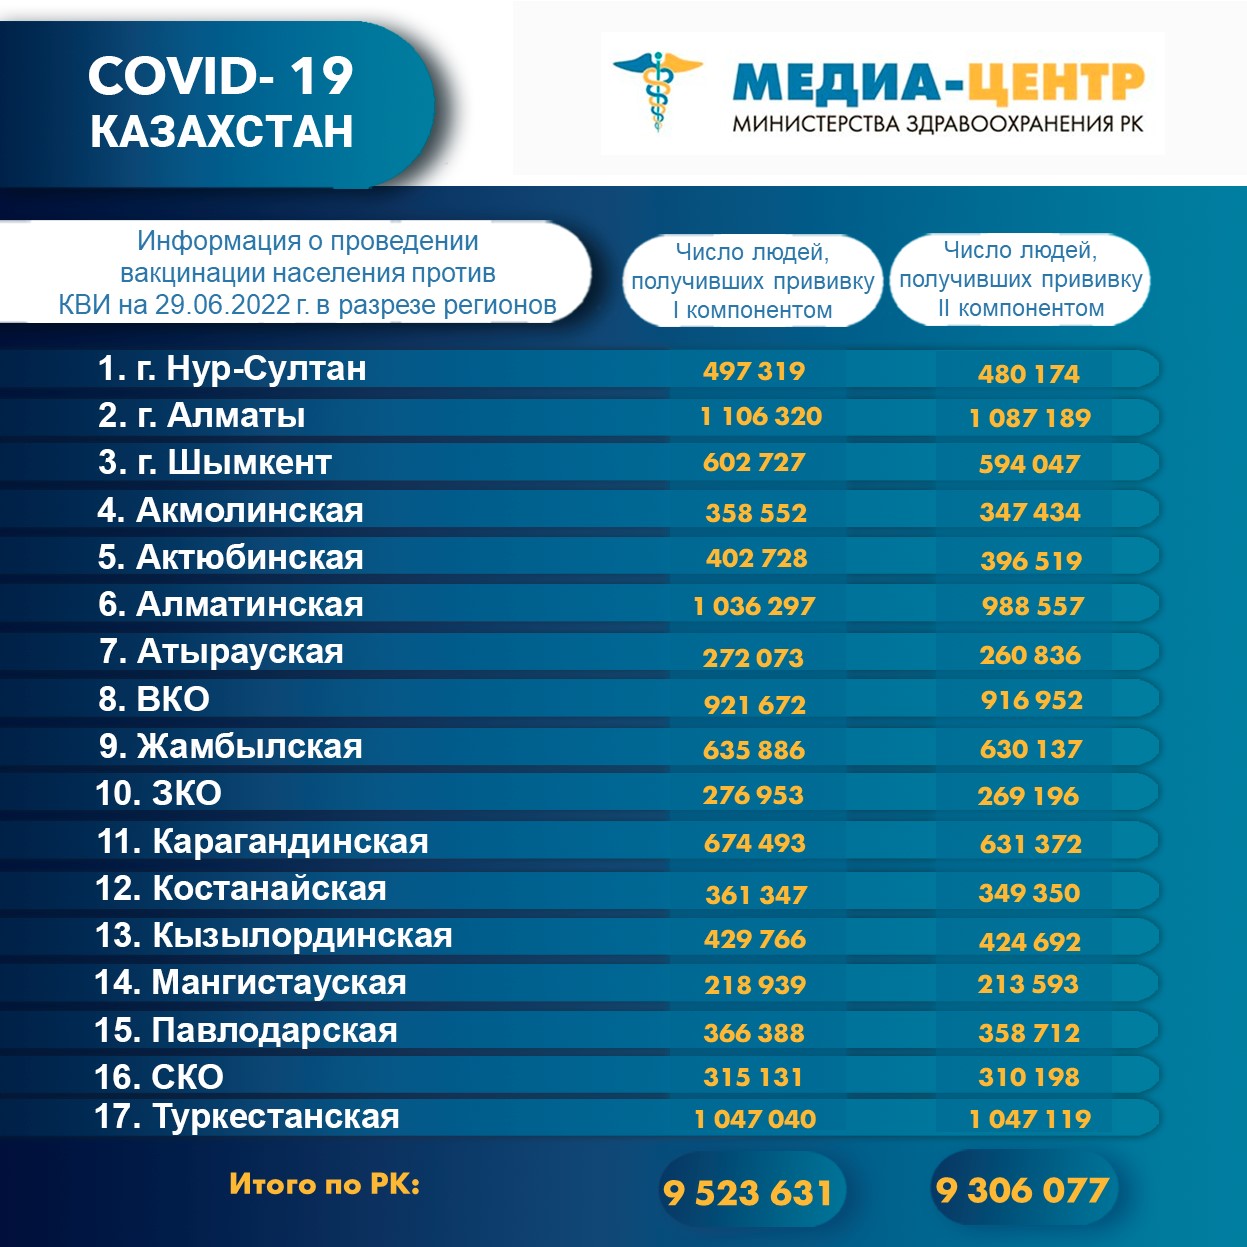 I компонентом 9 523 631 человек провакцинировано в Казахстане на 29.06.2022 г, II компонентом 9 306 077 человек. Ревакцинировано – 4 772 390